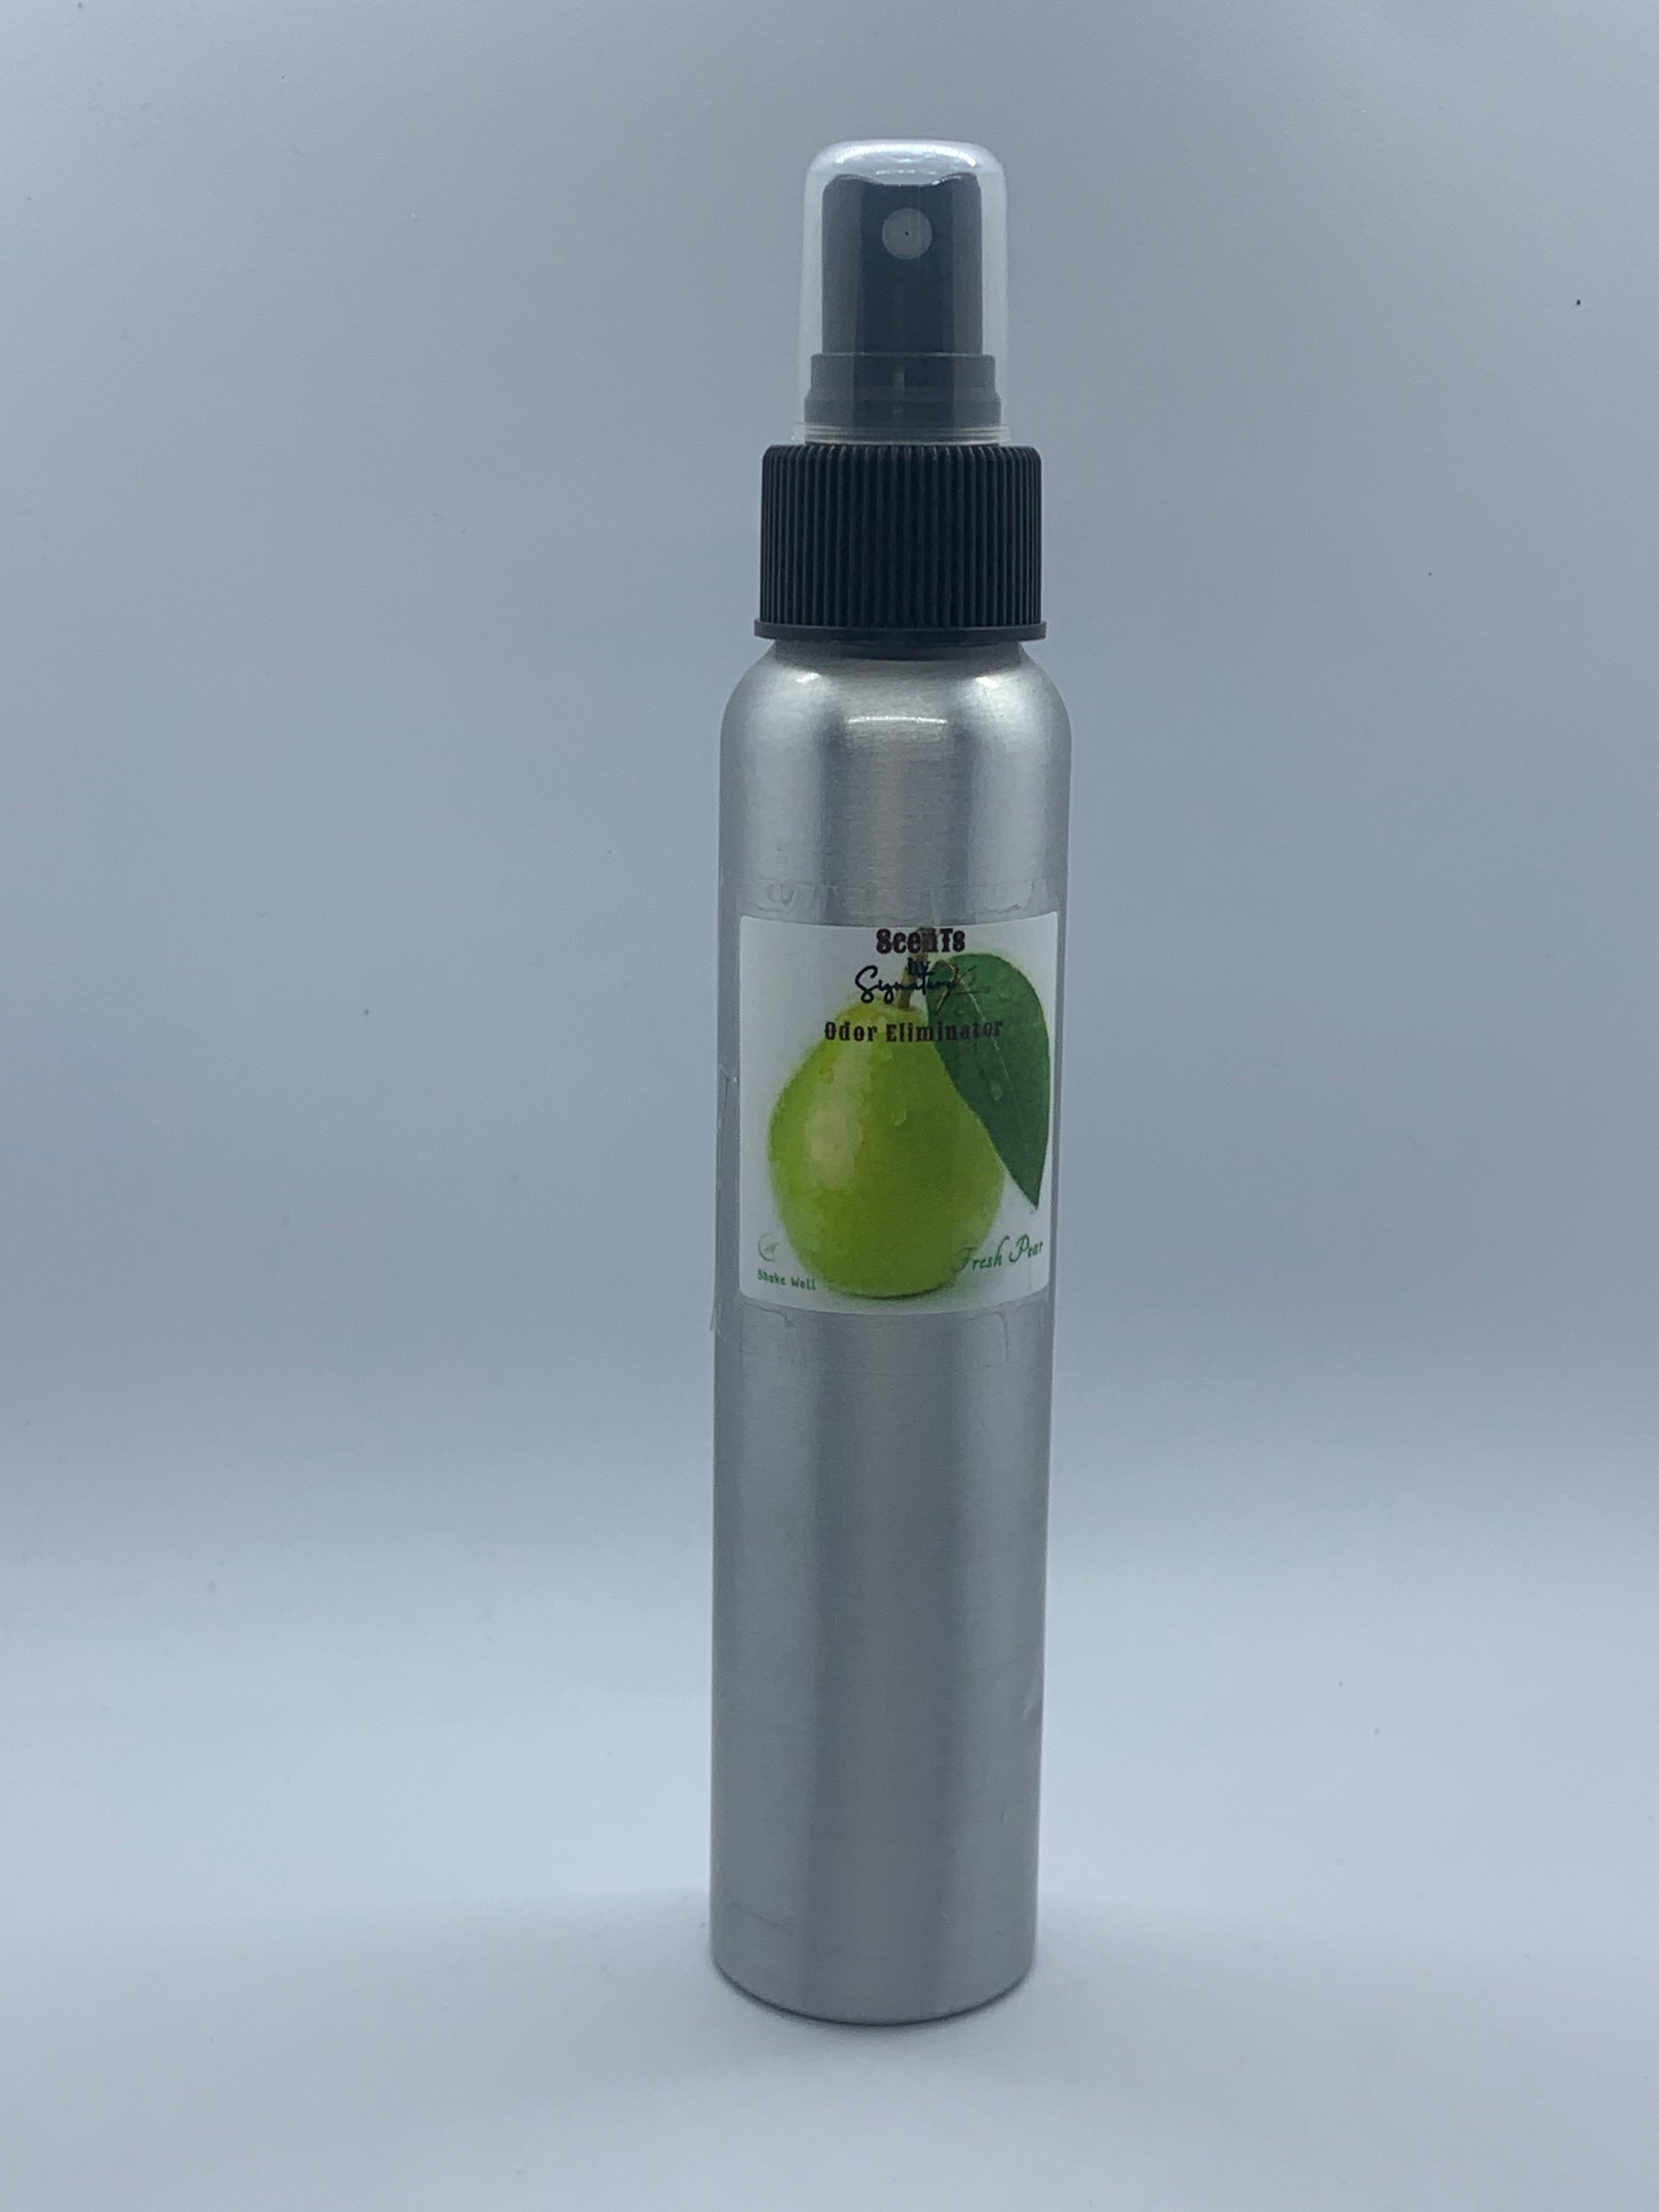 Scents Odor Eliminator Variety Pack - 2 Pack